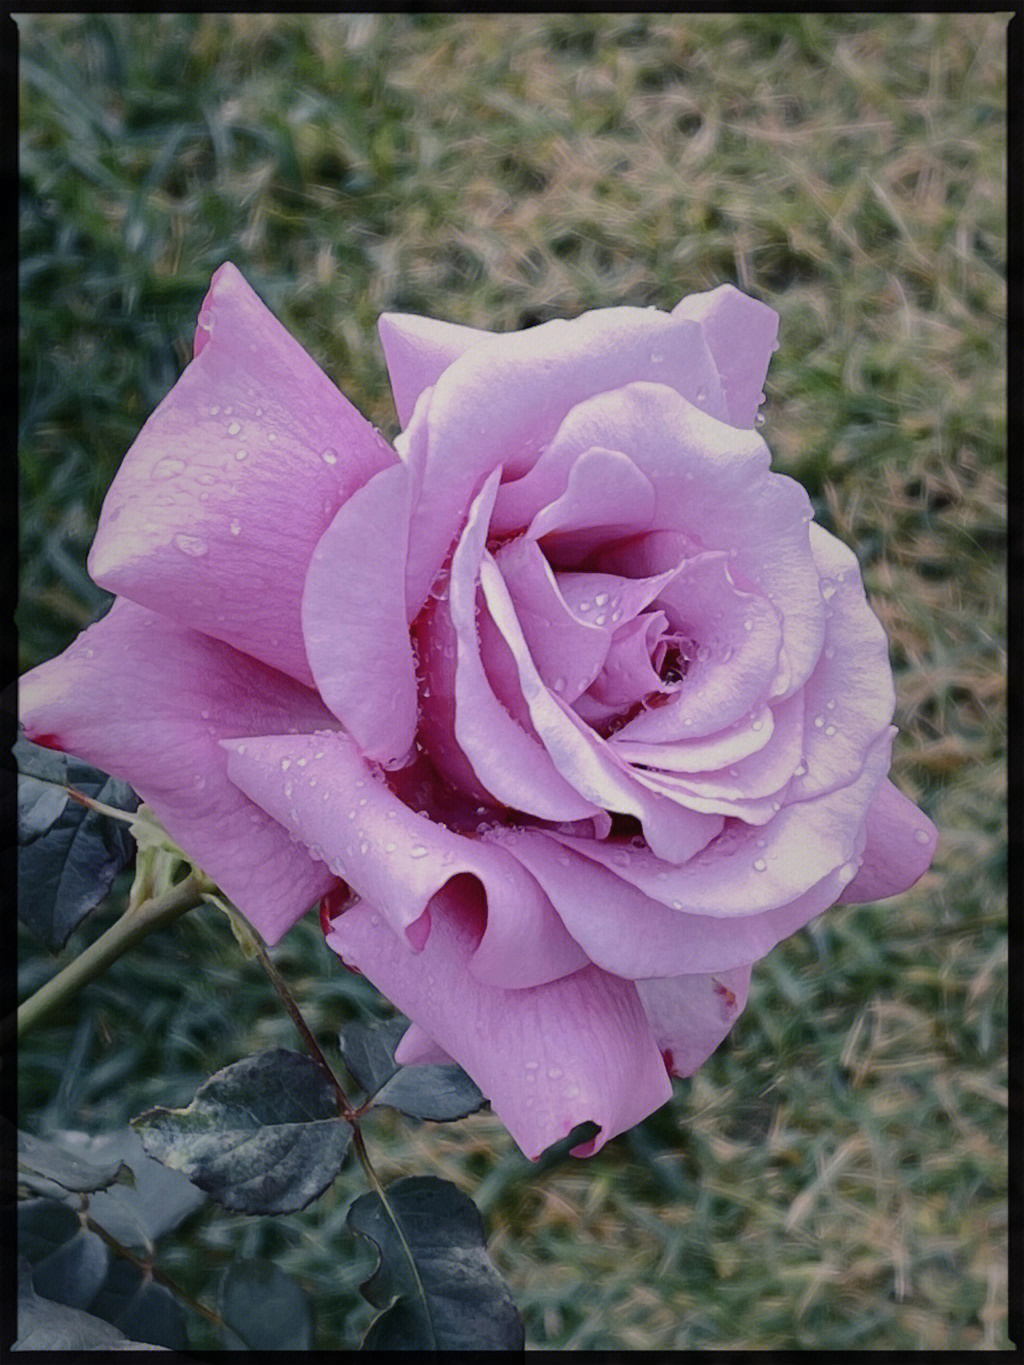 花型不是特别标准,但是她的花色从开始的紫玫红慢慢演变成有